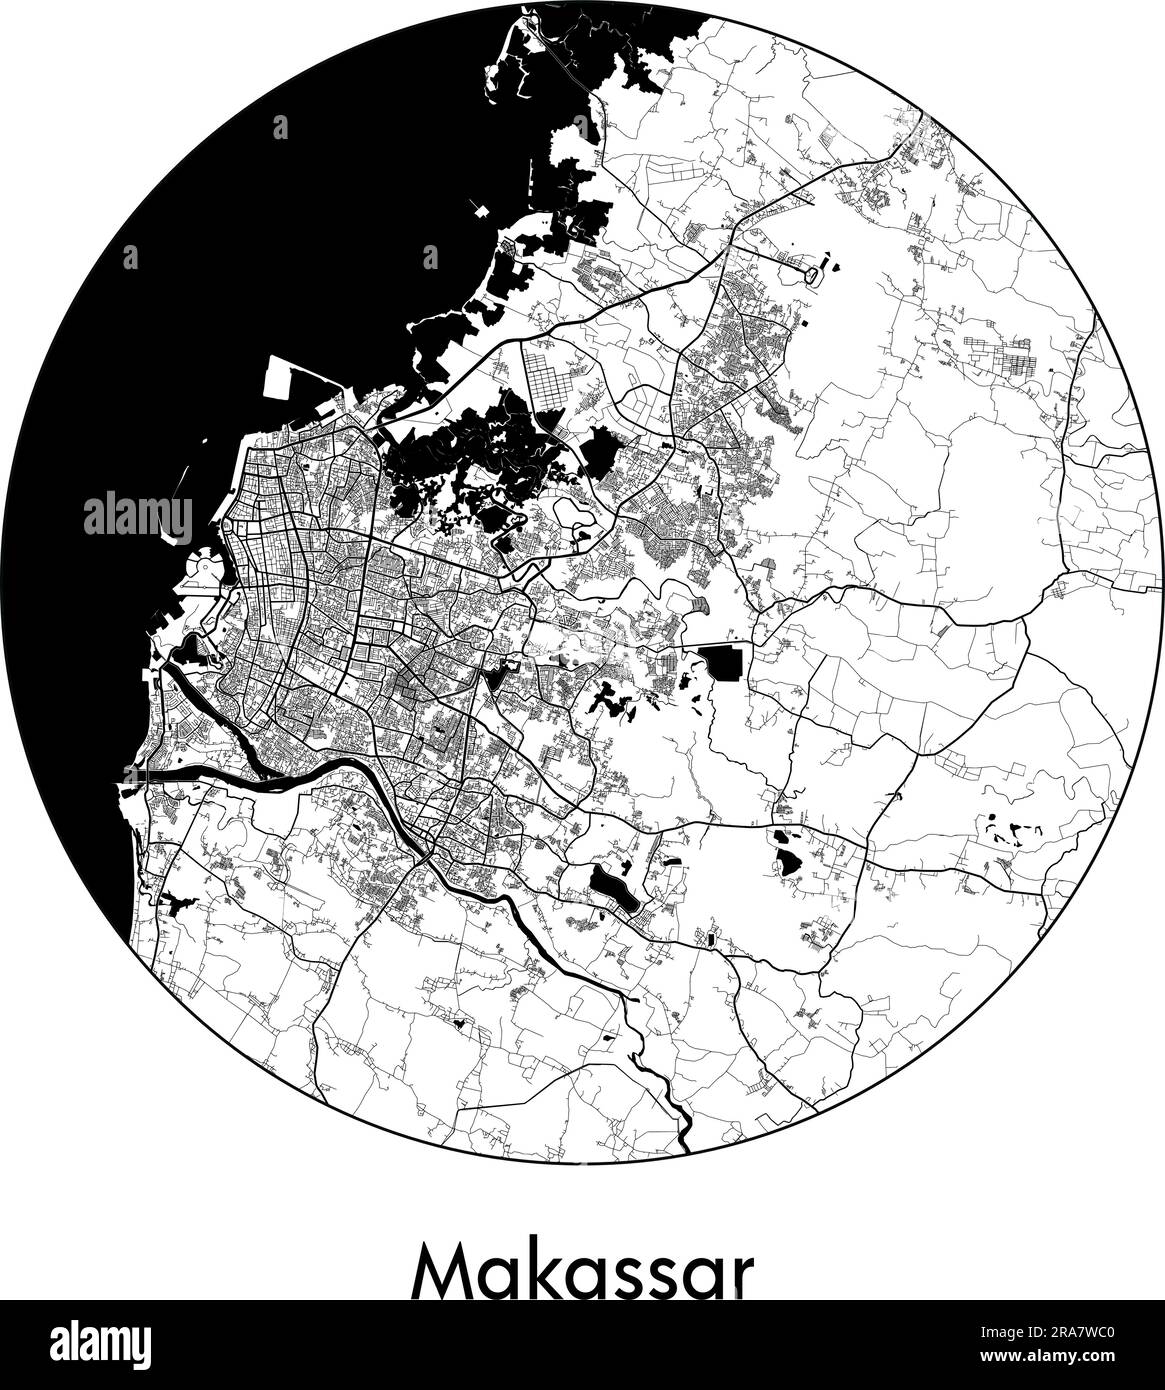 City Map Makassar Indonesia Asia vector illustration black white Stock Vector